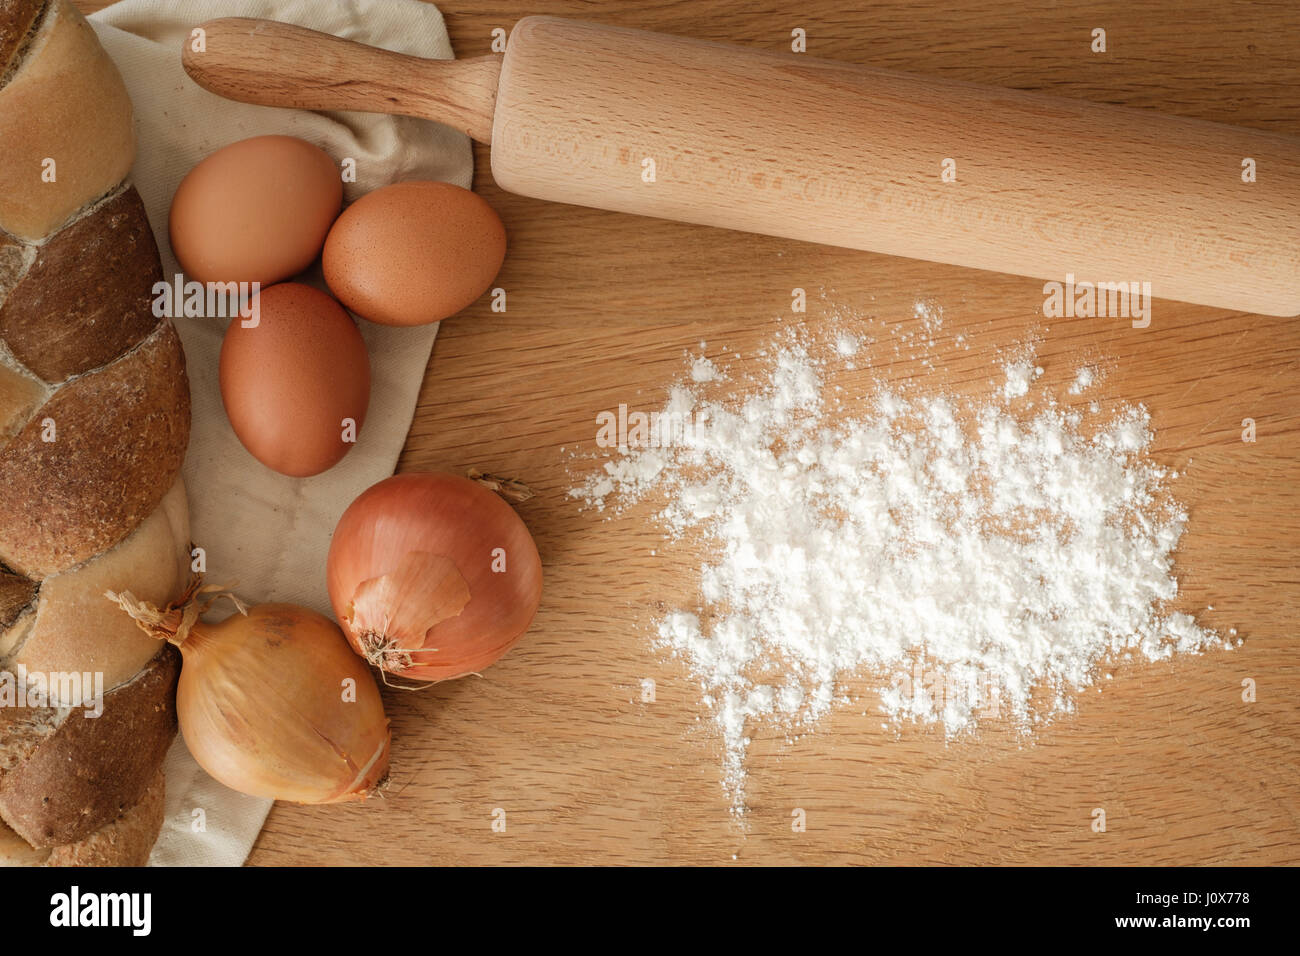 Brot mit Zwiebeln, Eiern, Mehl und einem Nudelholz auf einem Holztisch mit textfreiraum geflochten.  Food-Konzept Stockfoto